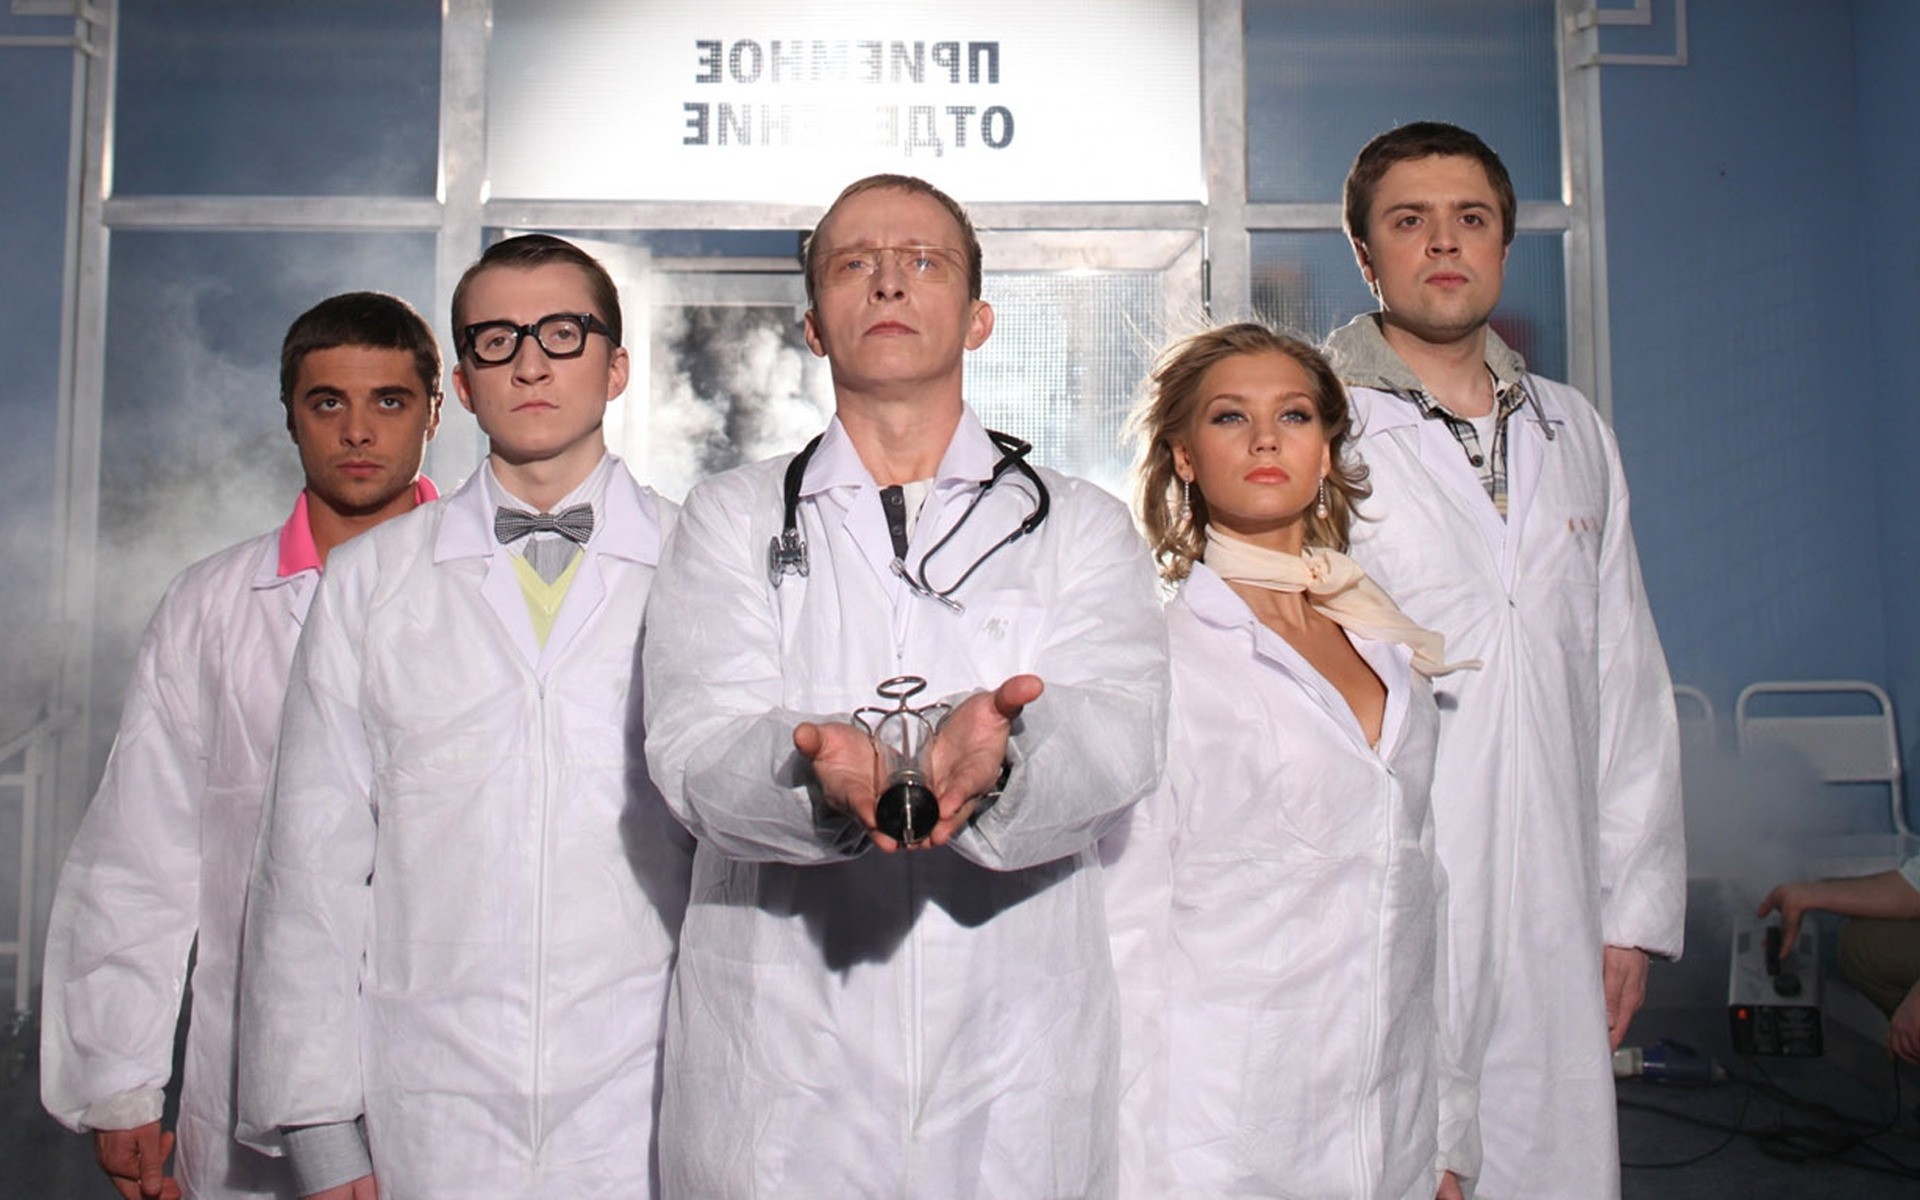 телесериалы здравоохранения человек больница женщина врач медицина взрослый портрет сыгранность группа лаборатория в помещении актер наука россия врачи белый